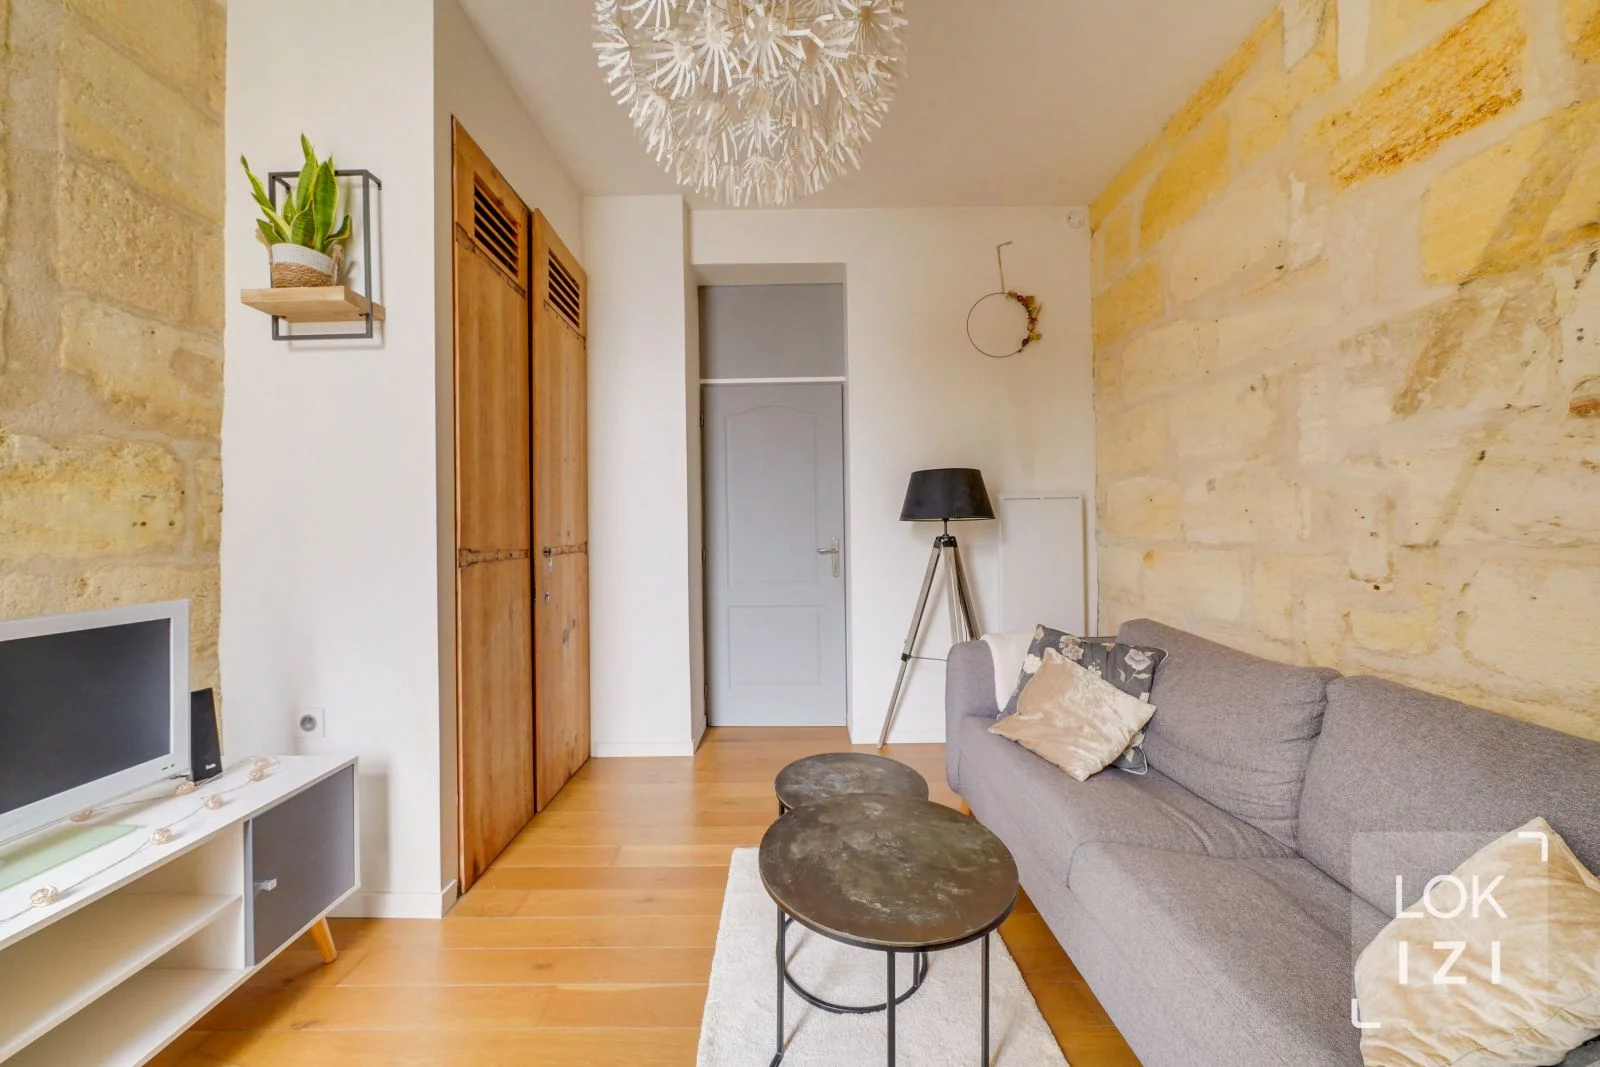 Location appartement meublé 2 pièces 39m² (Bordeaux centre - Chartrons)